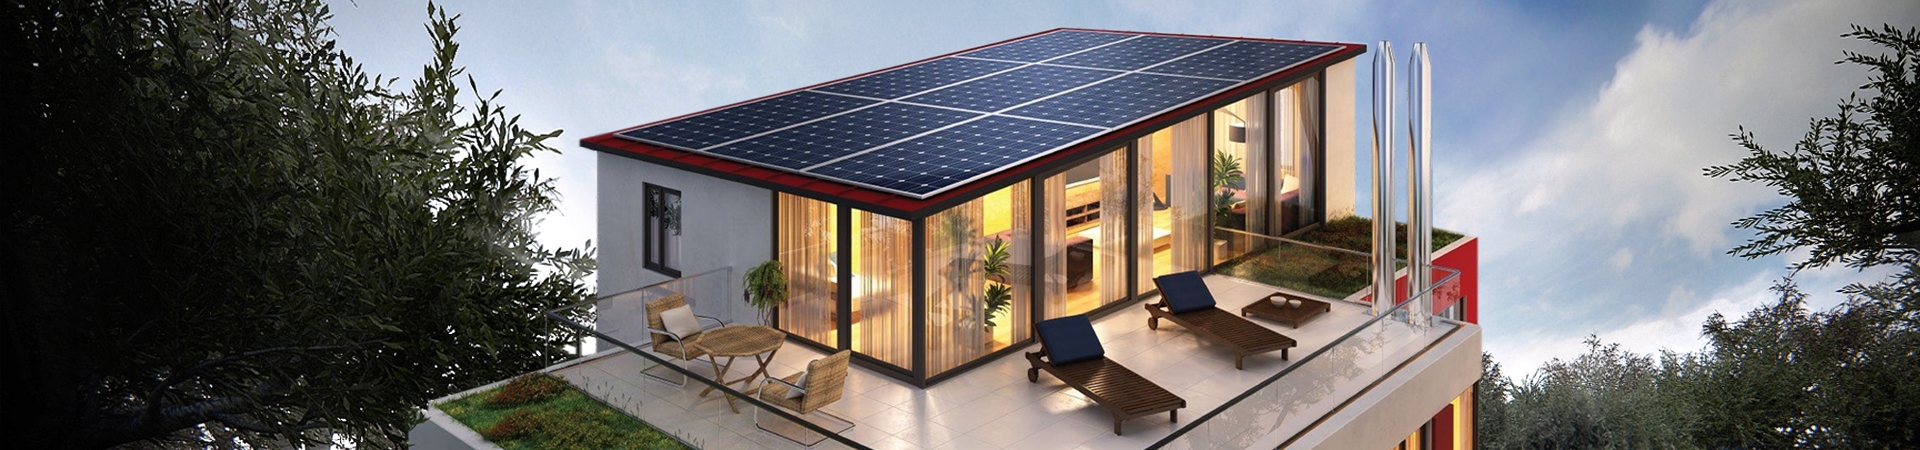 instalaciones-fotovoltaicas